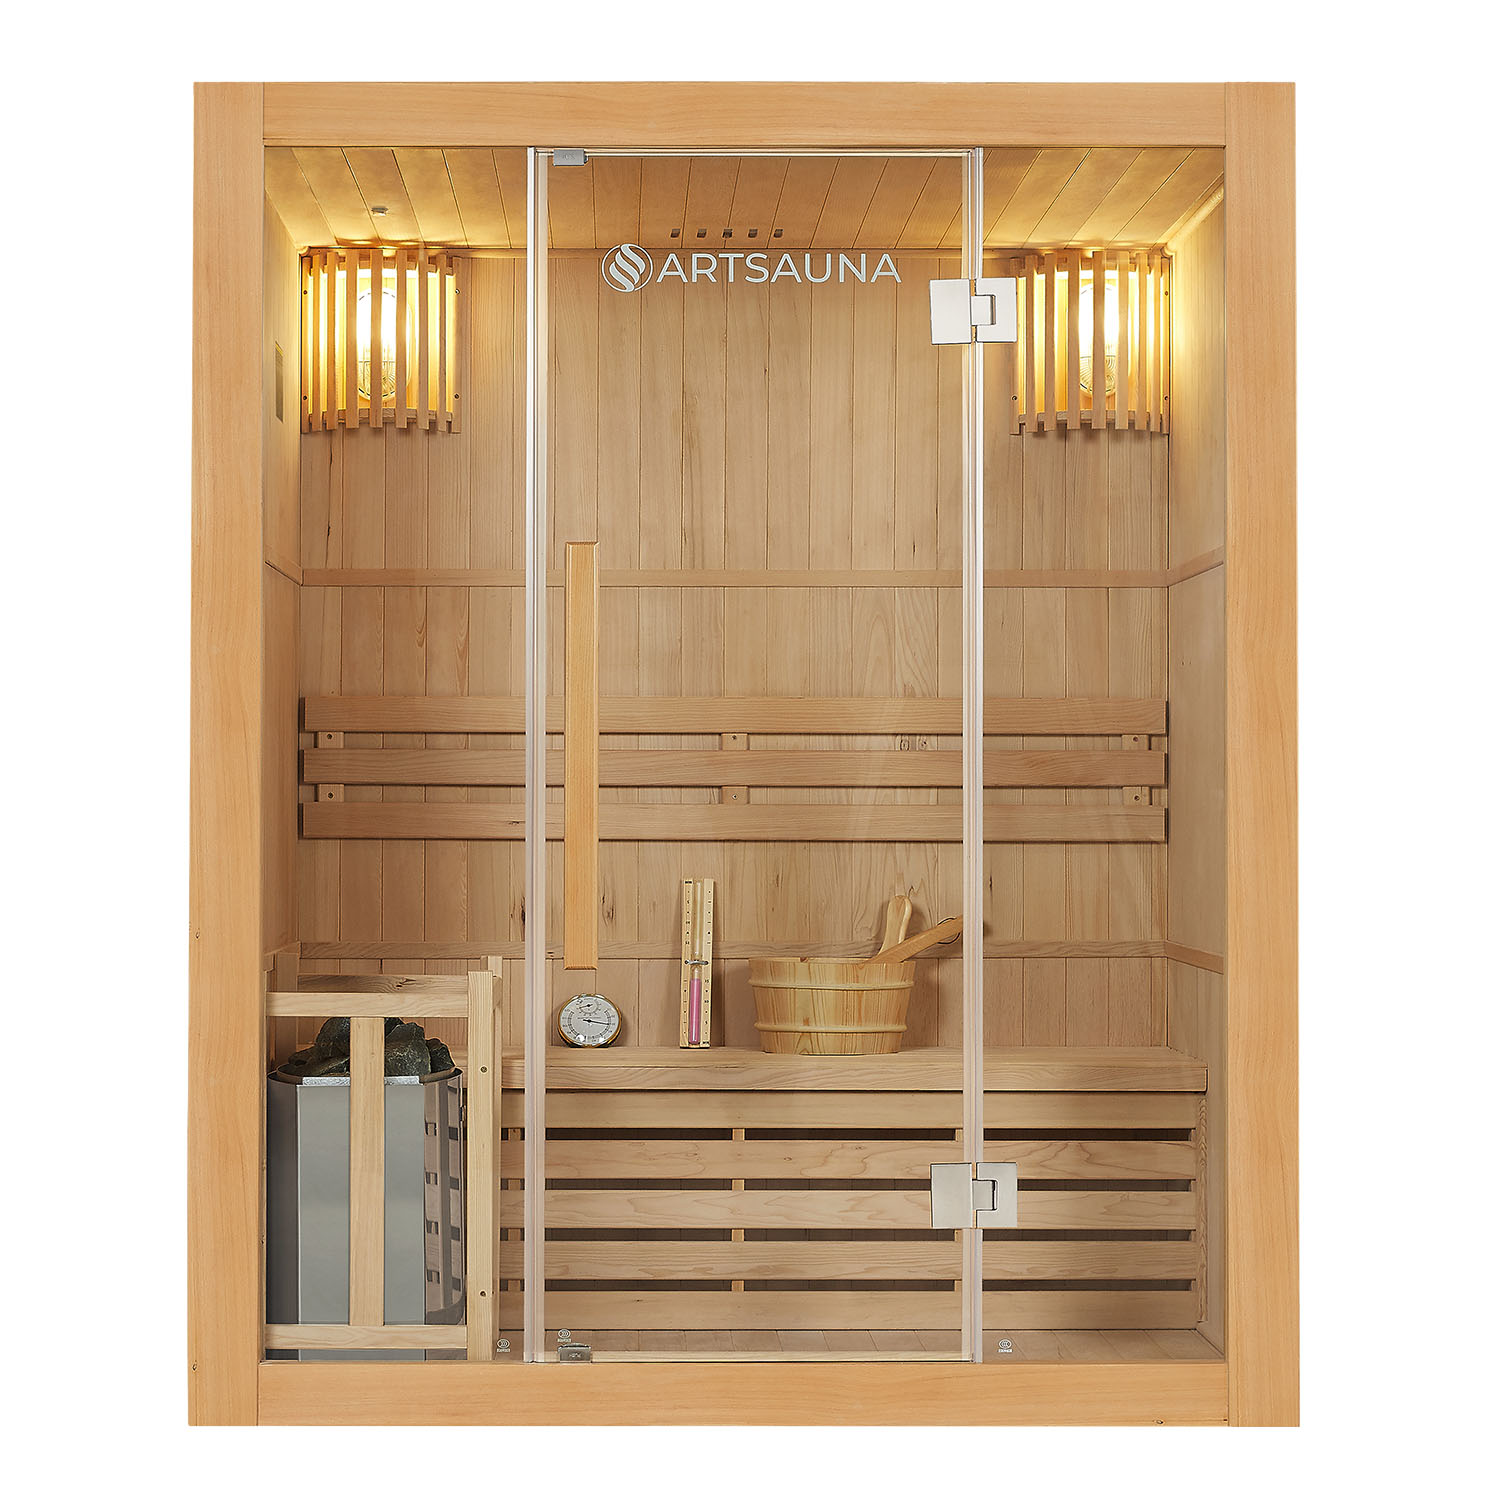 Juskys Tradiční saunová kabina / finská sauna Tampere 150 x 110 cm 4,5 kW